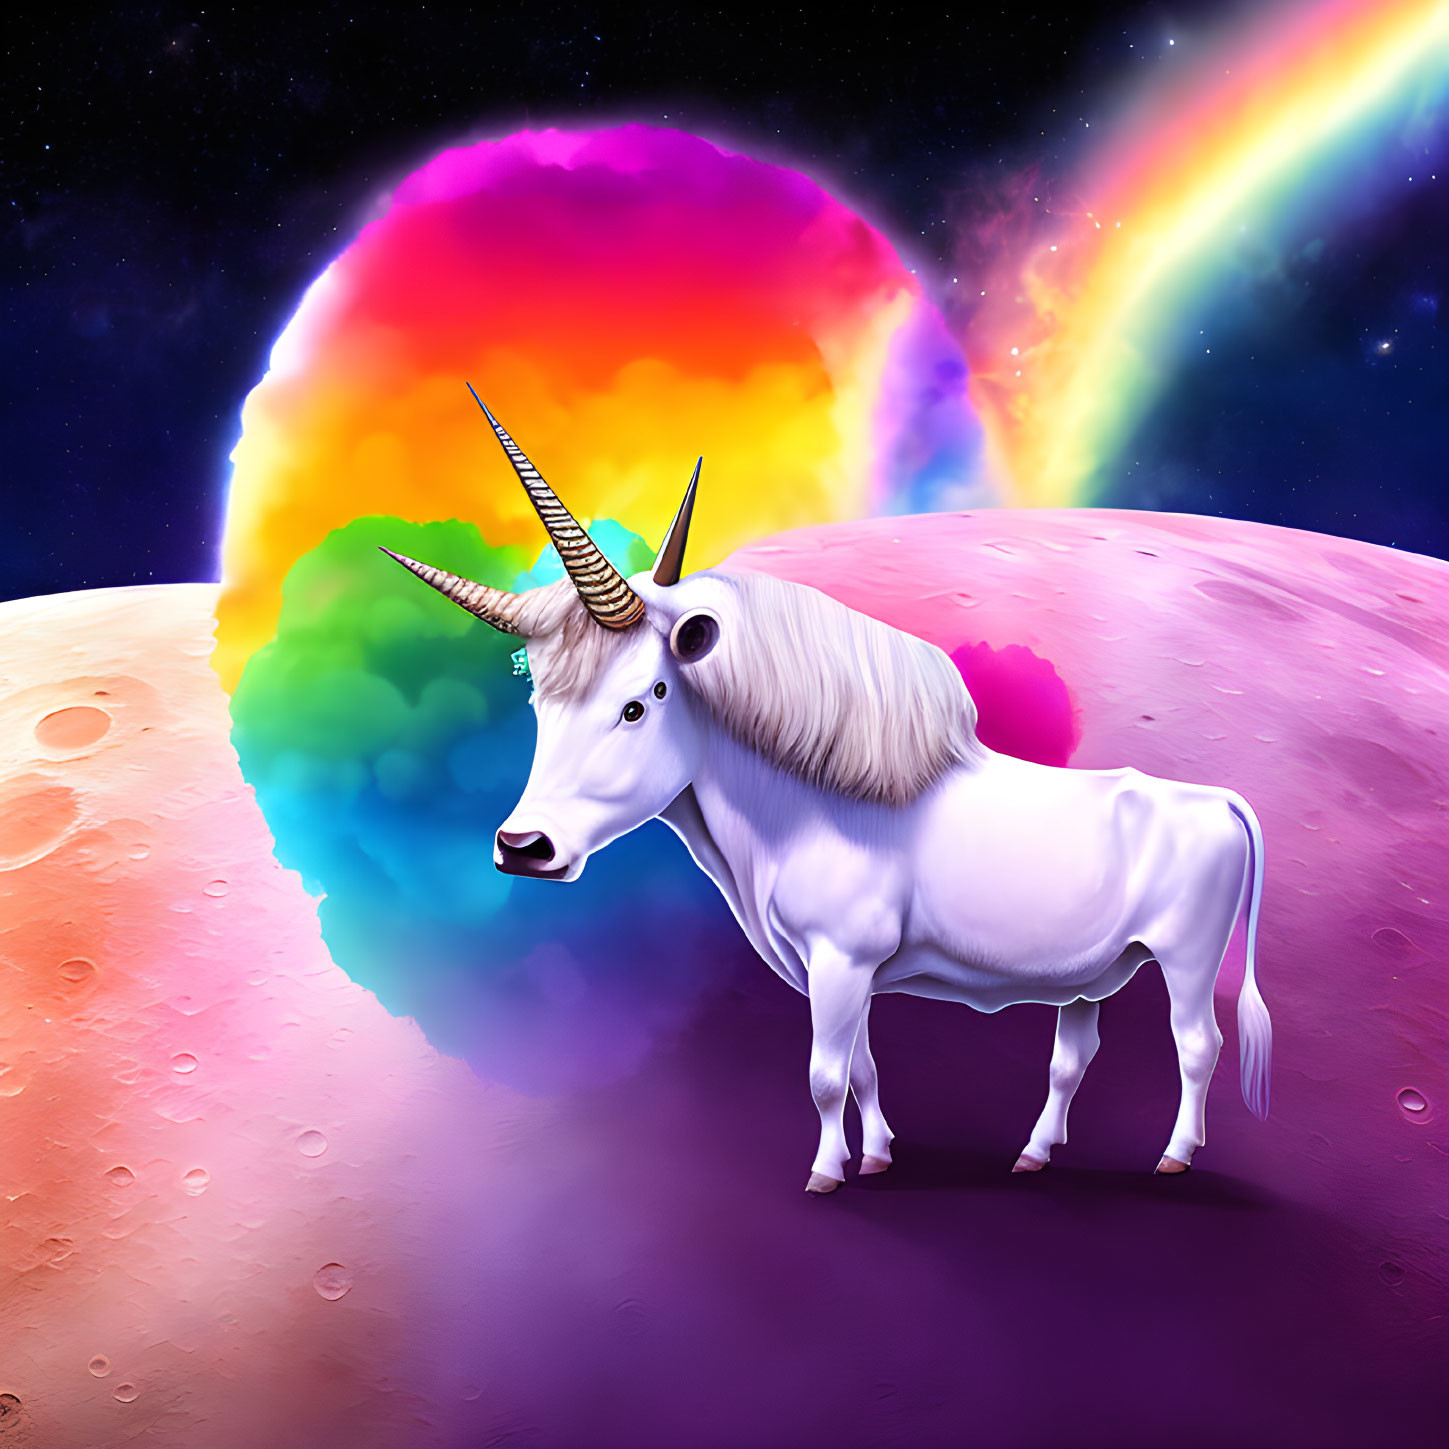 Majestic unicorn on fantasy planet with rainbow nebula